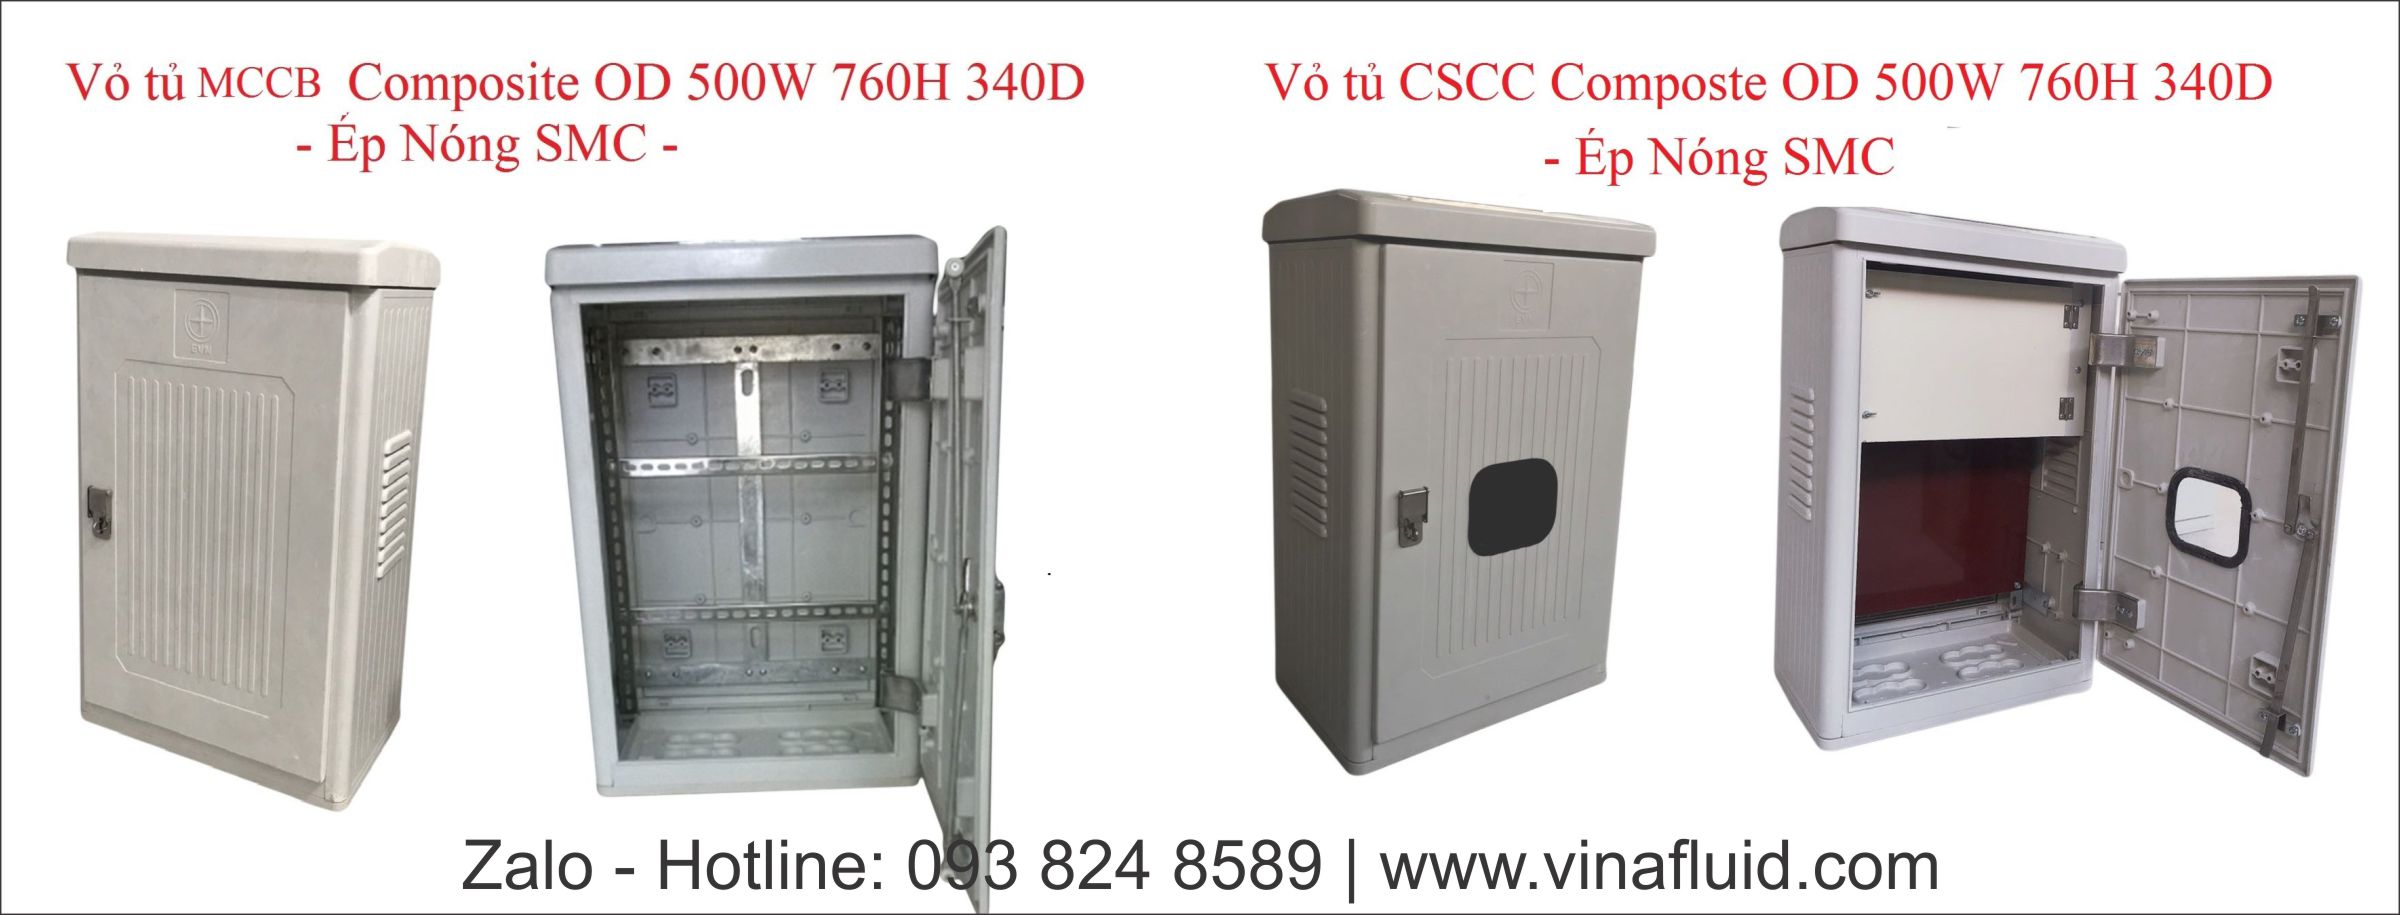 Các loại vỏ tủ điện Composite ép nóng lắp ngoài trời